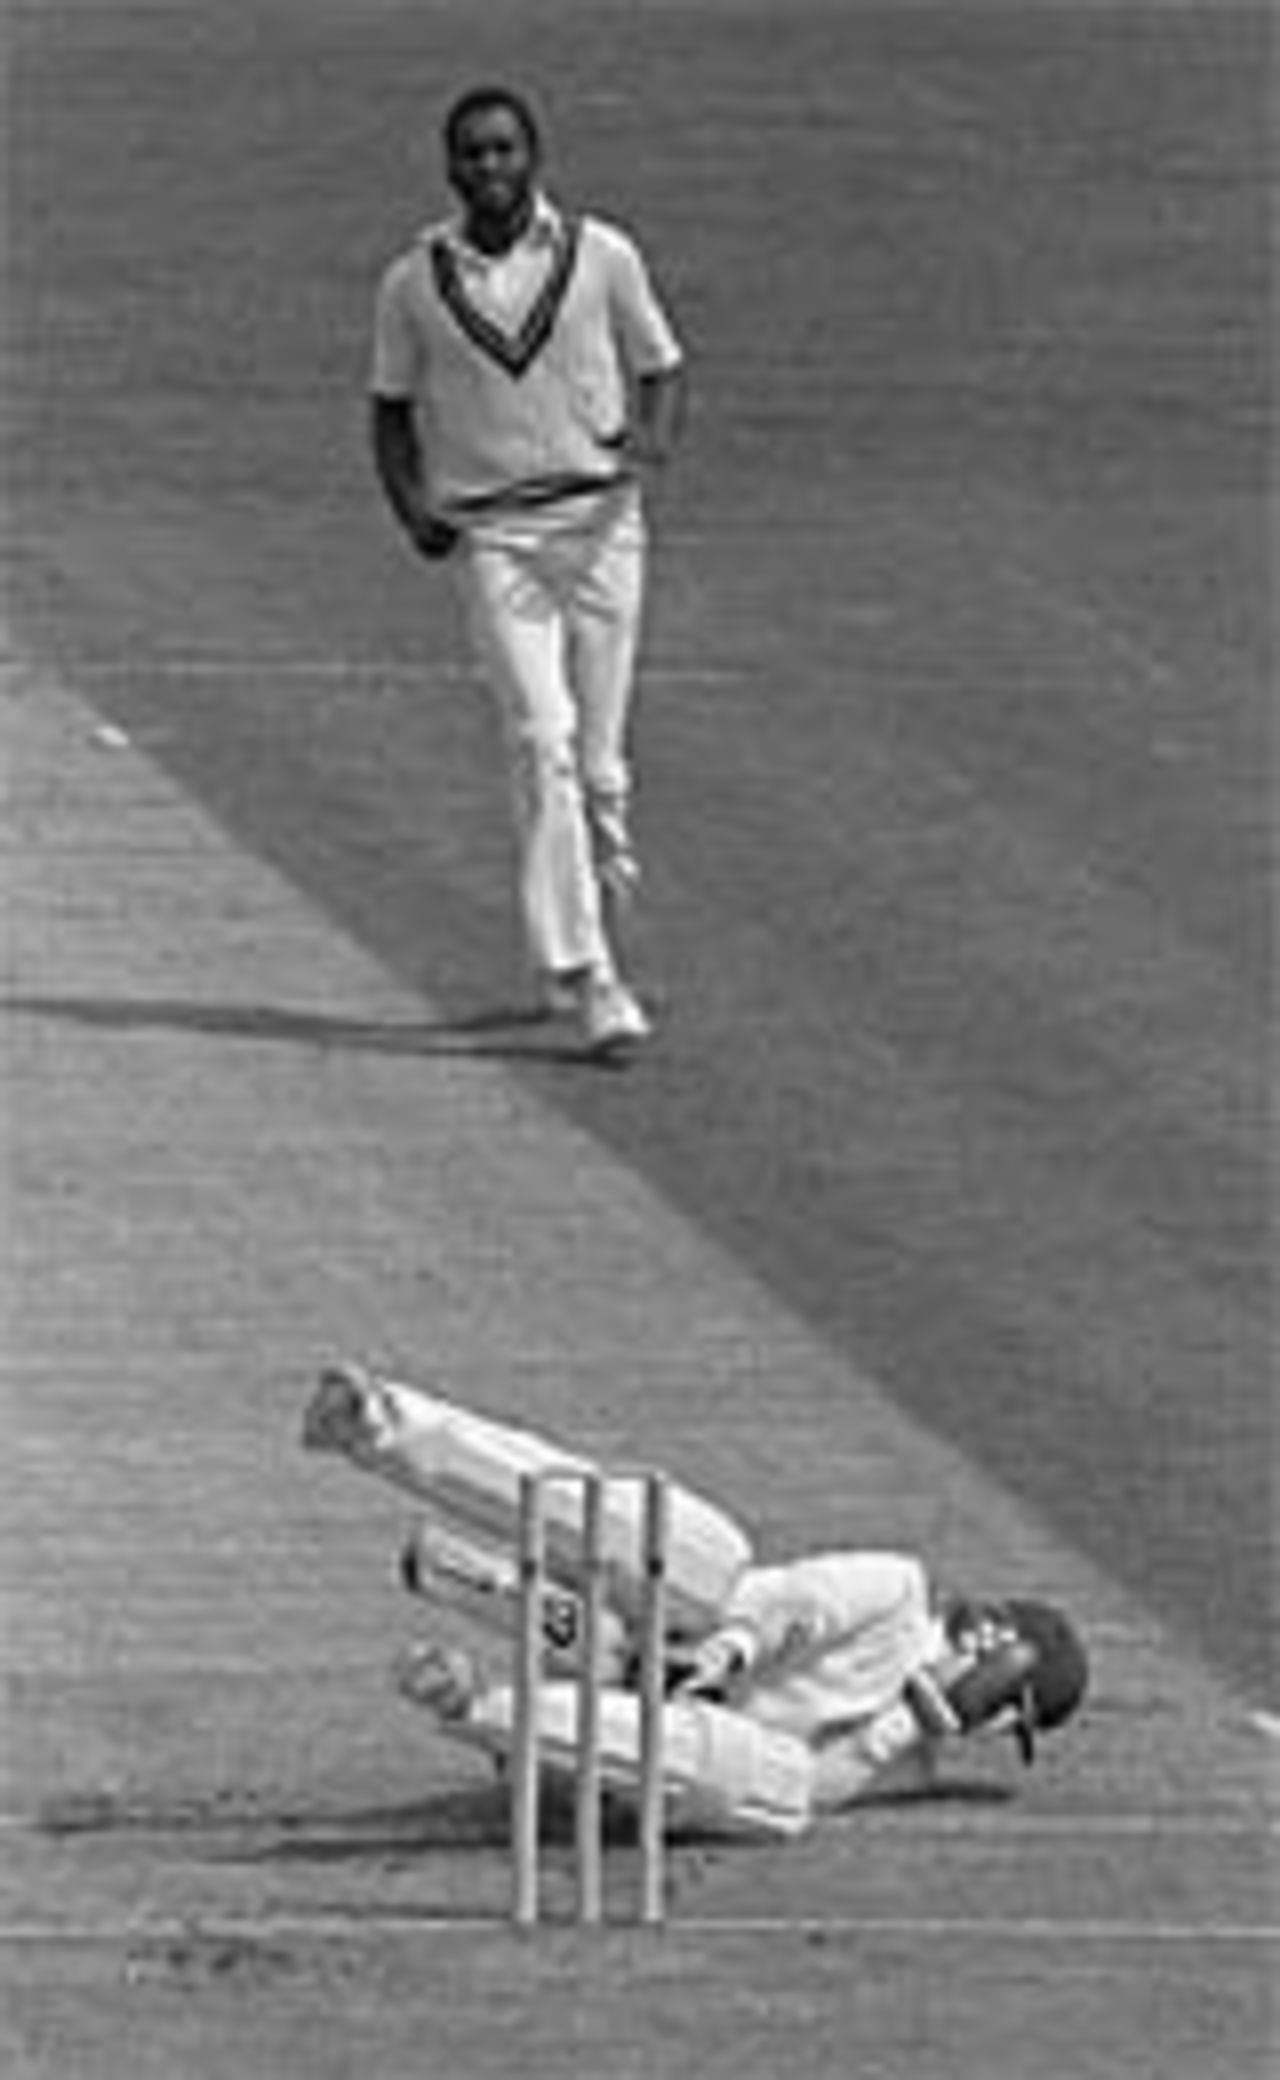 Malcolm Marshall fells Andy Lloyd, England v West Indies, Edgbaston, 1984